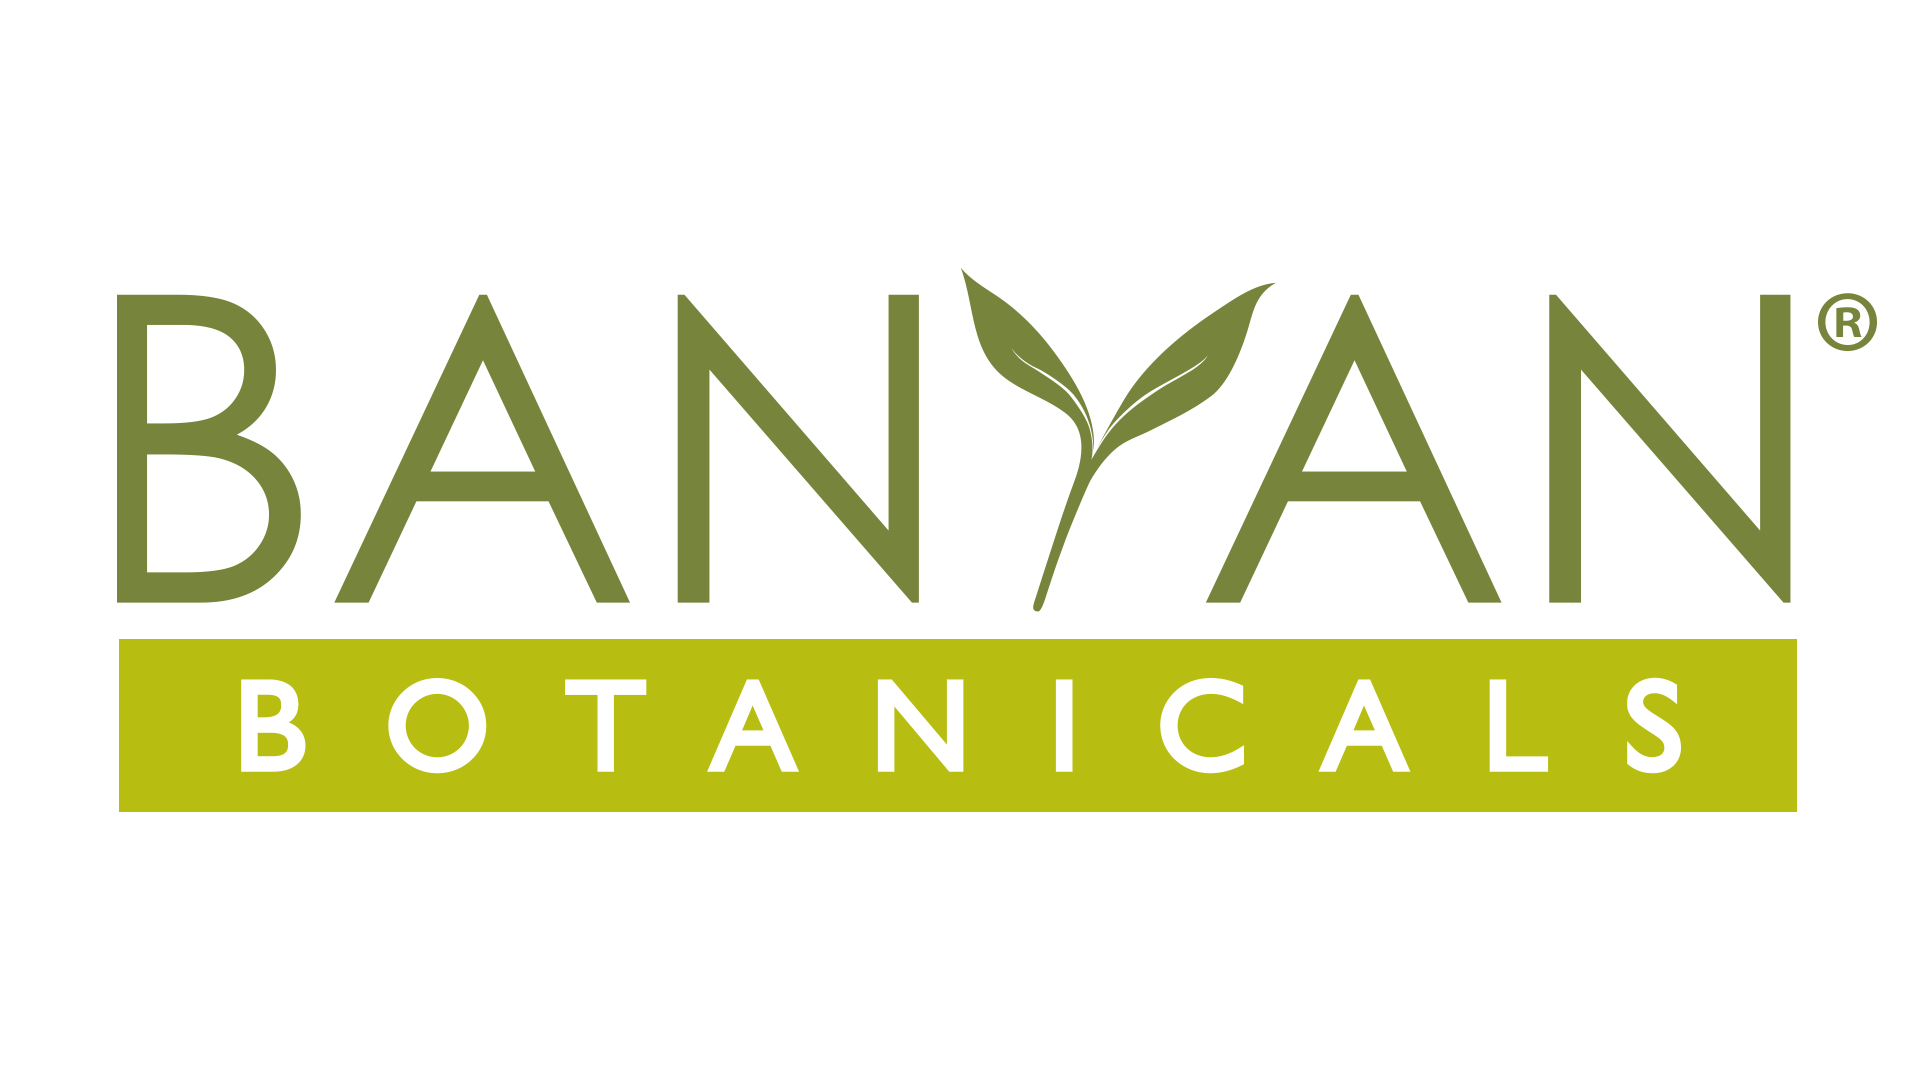 Banyan botanicals